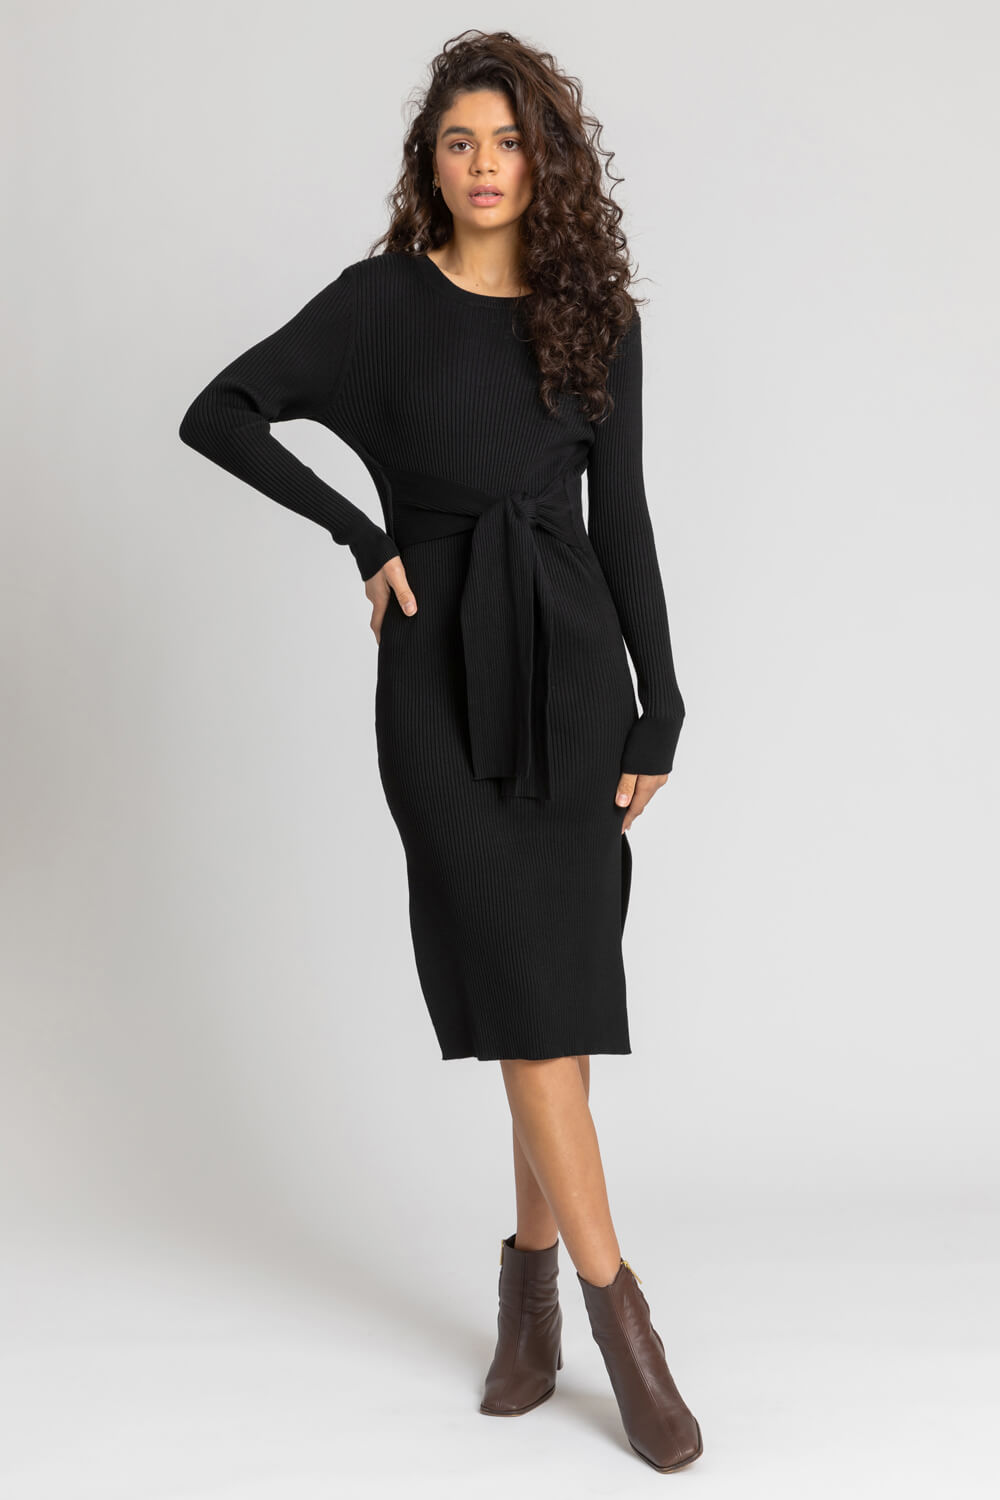 Black Side Split Belted Knit Dress, Image 2 of 5